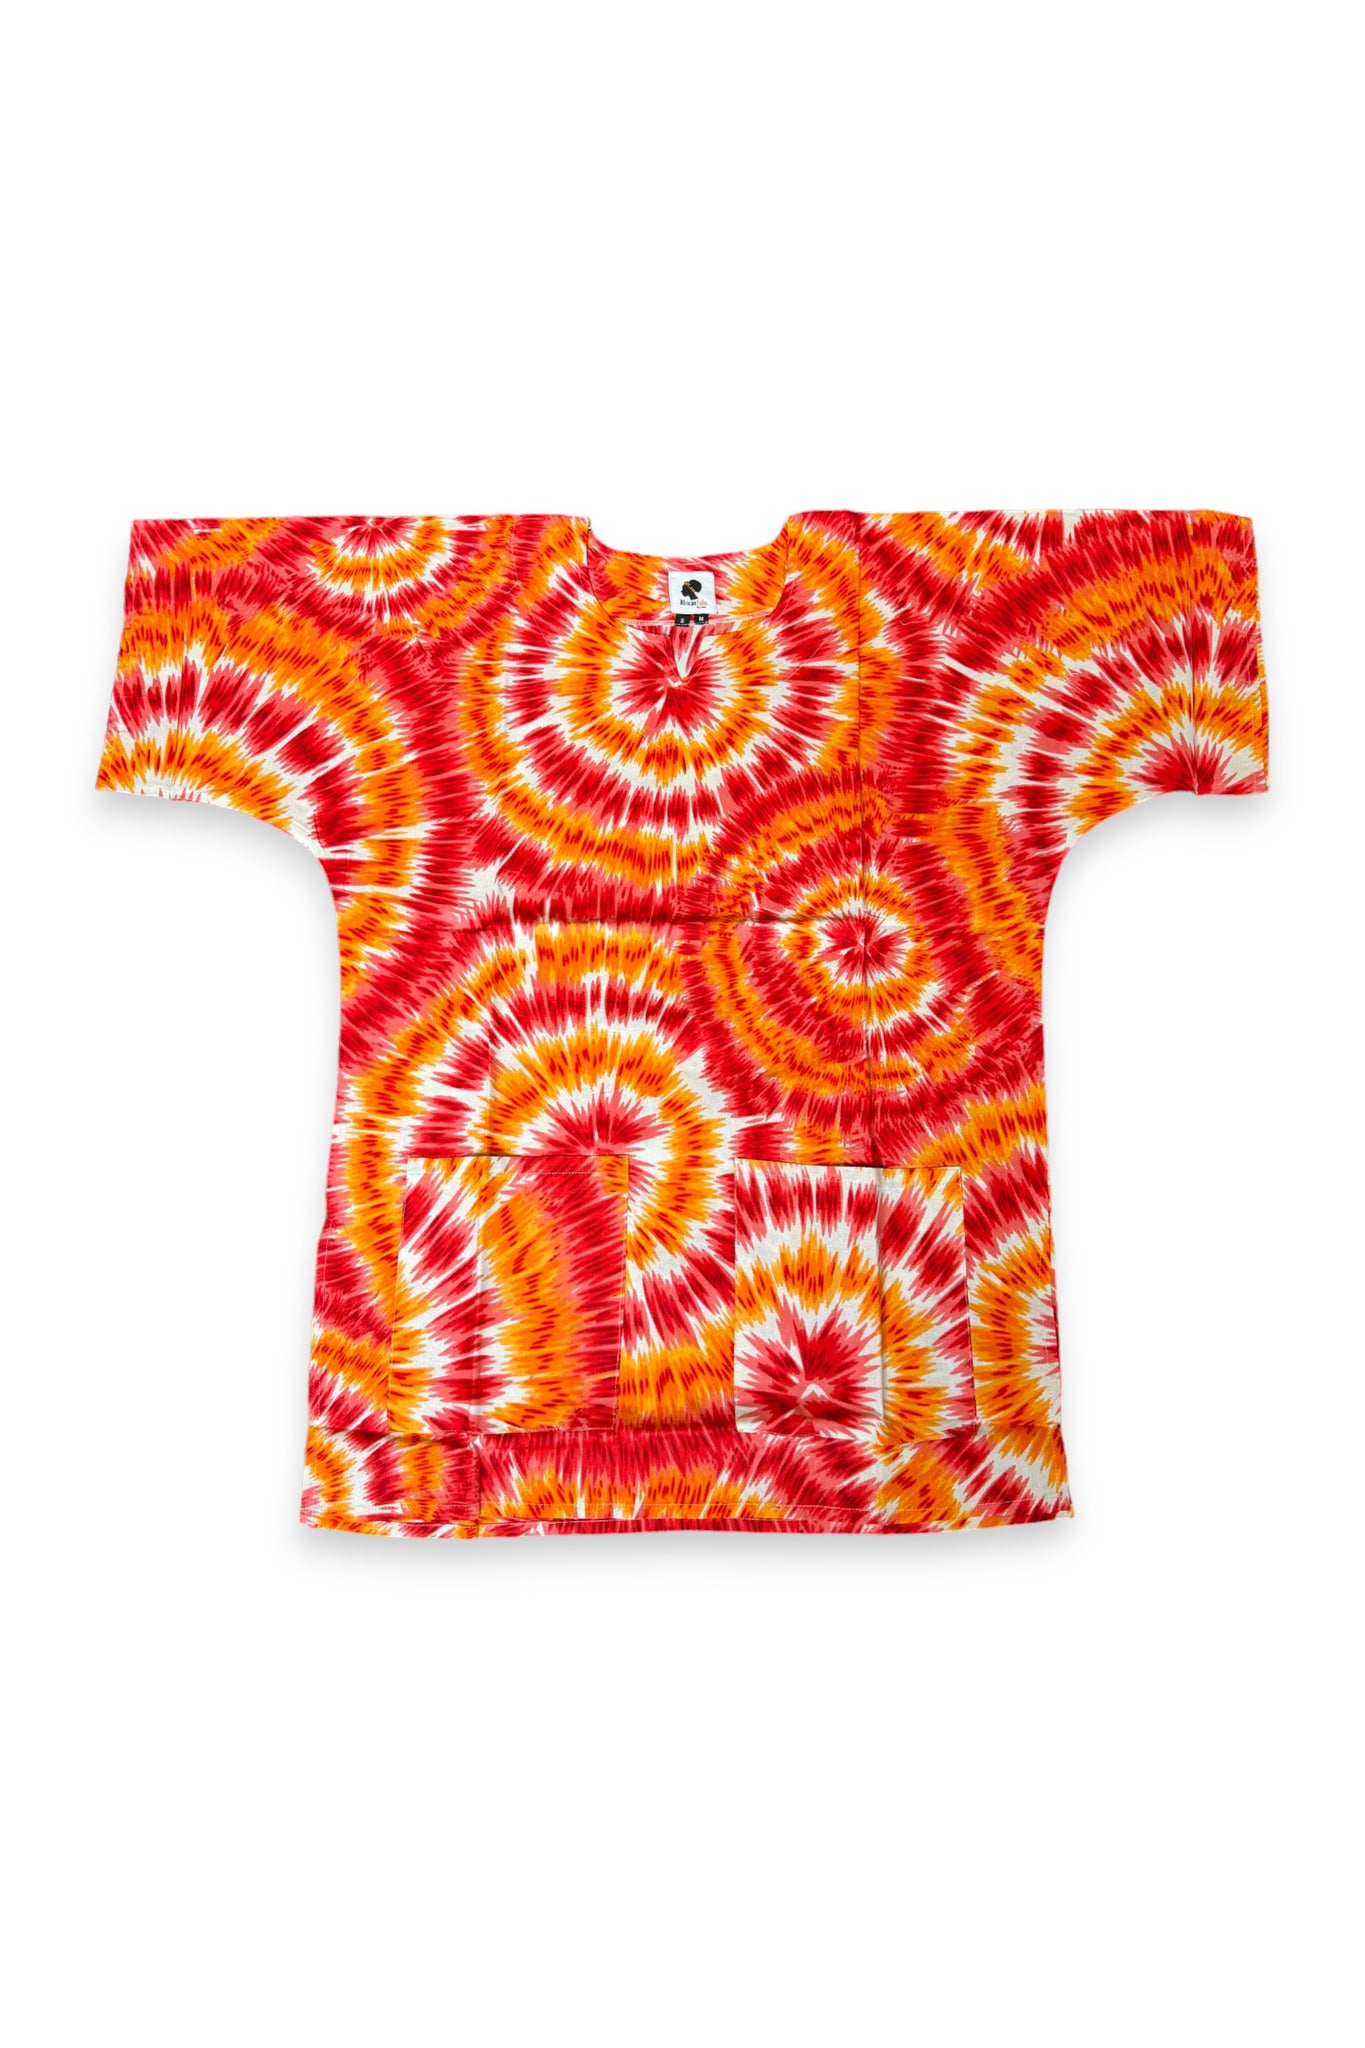 Oranje Tie-dye Dashiki Shirt / Dashiki Jurk - Afrikaans shirt - Unisex